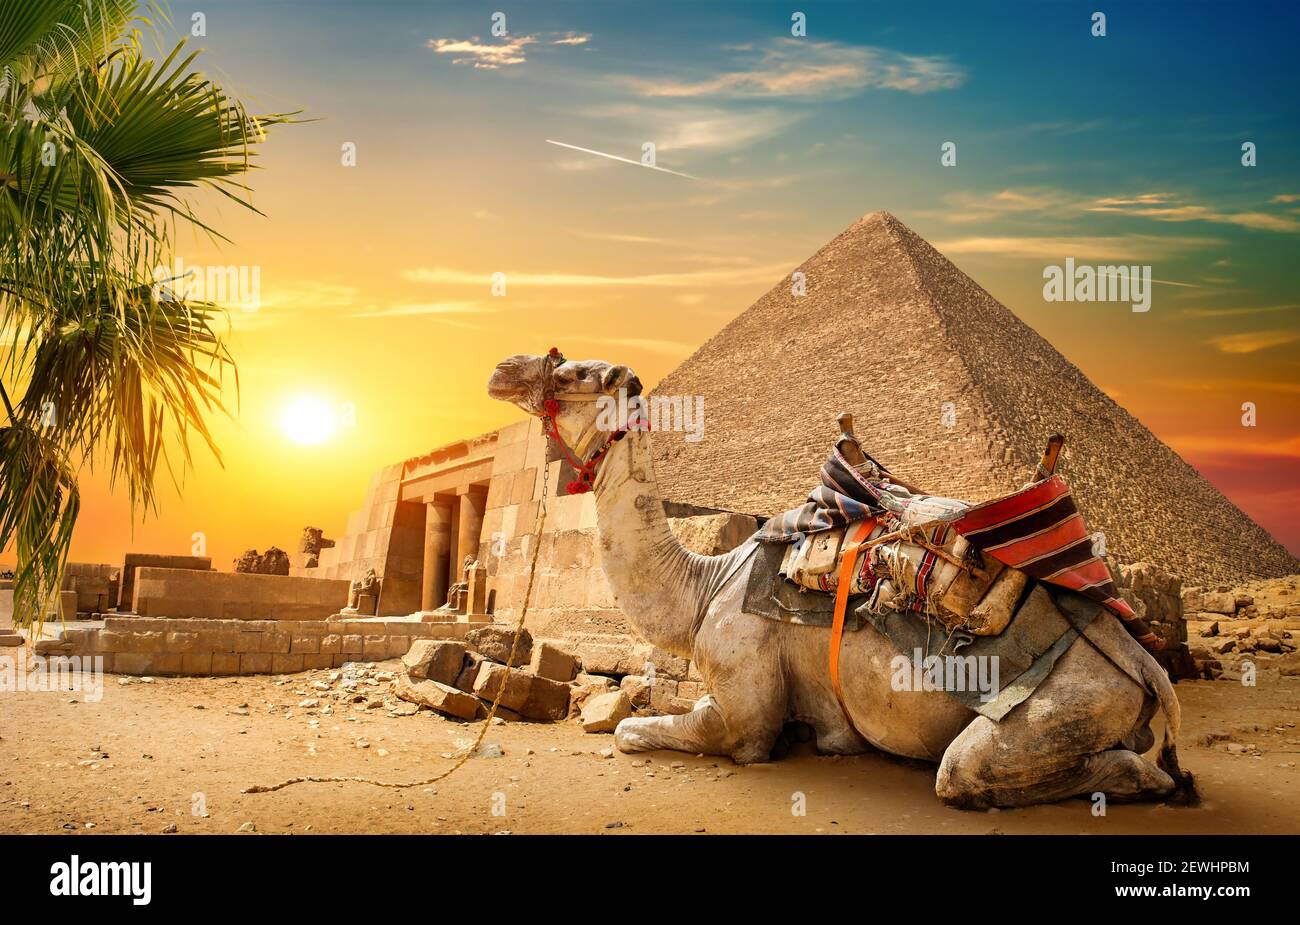 El camello descansa cerca de la pirámide de ruinas de Egipto. Foto de stock